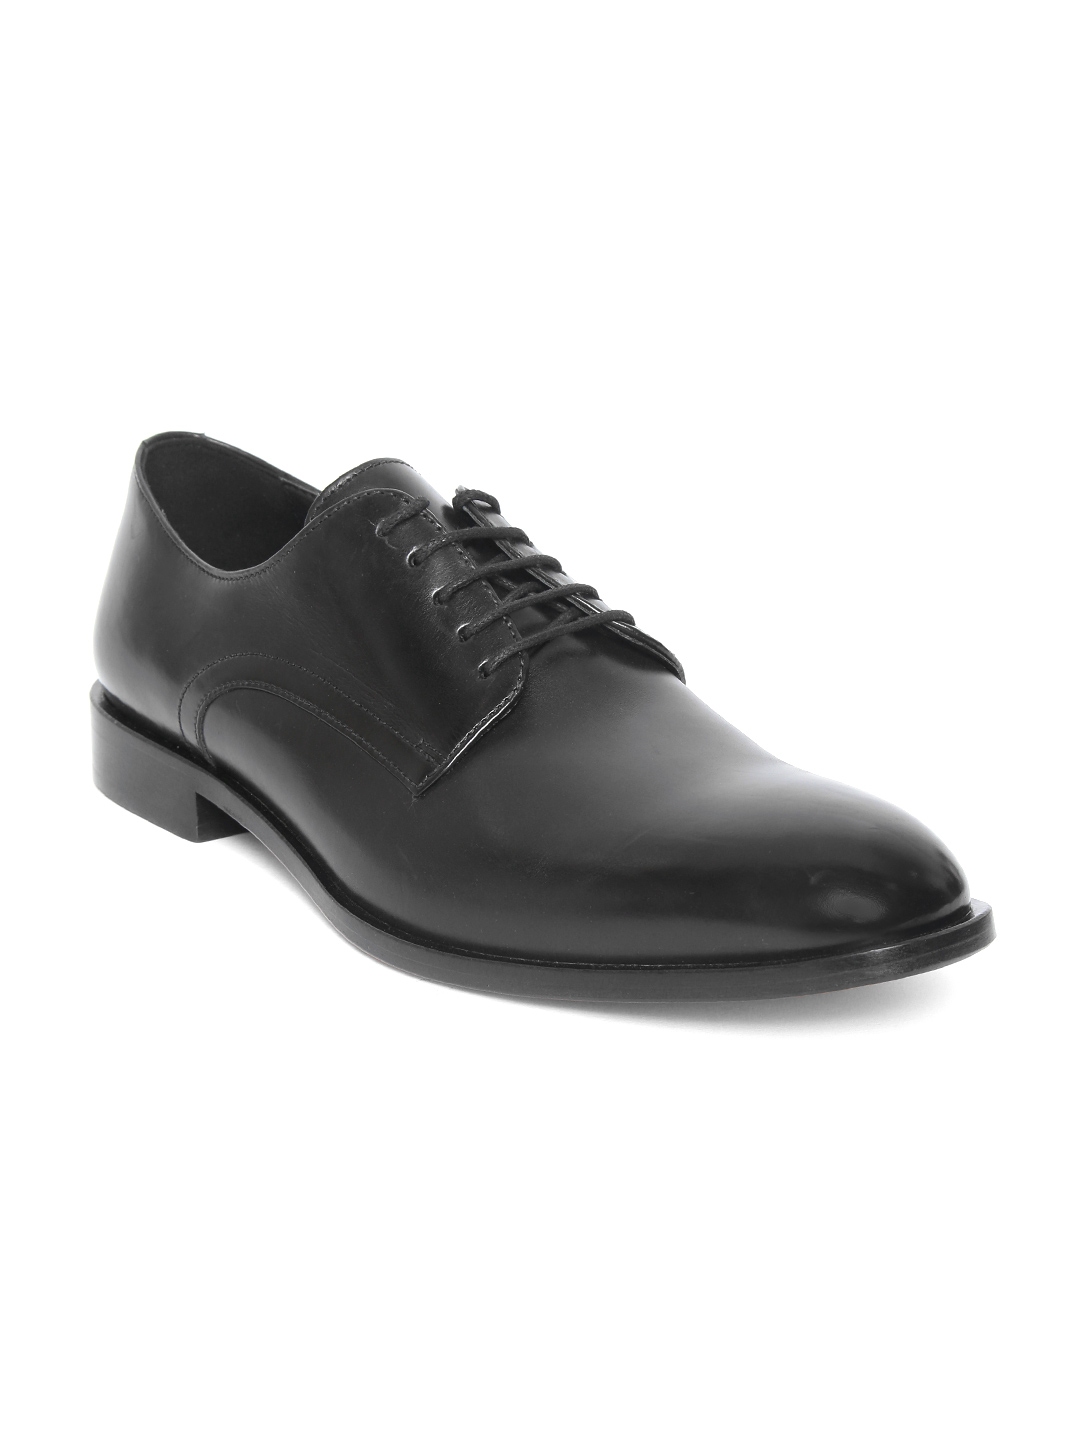 Buy Geox Men Black Solid Leather Formal Derbys - Formal Shoes for Men ...